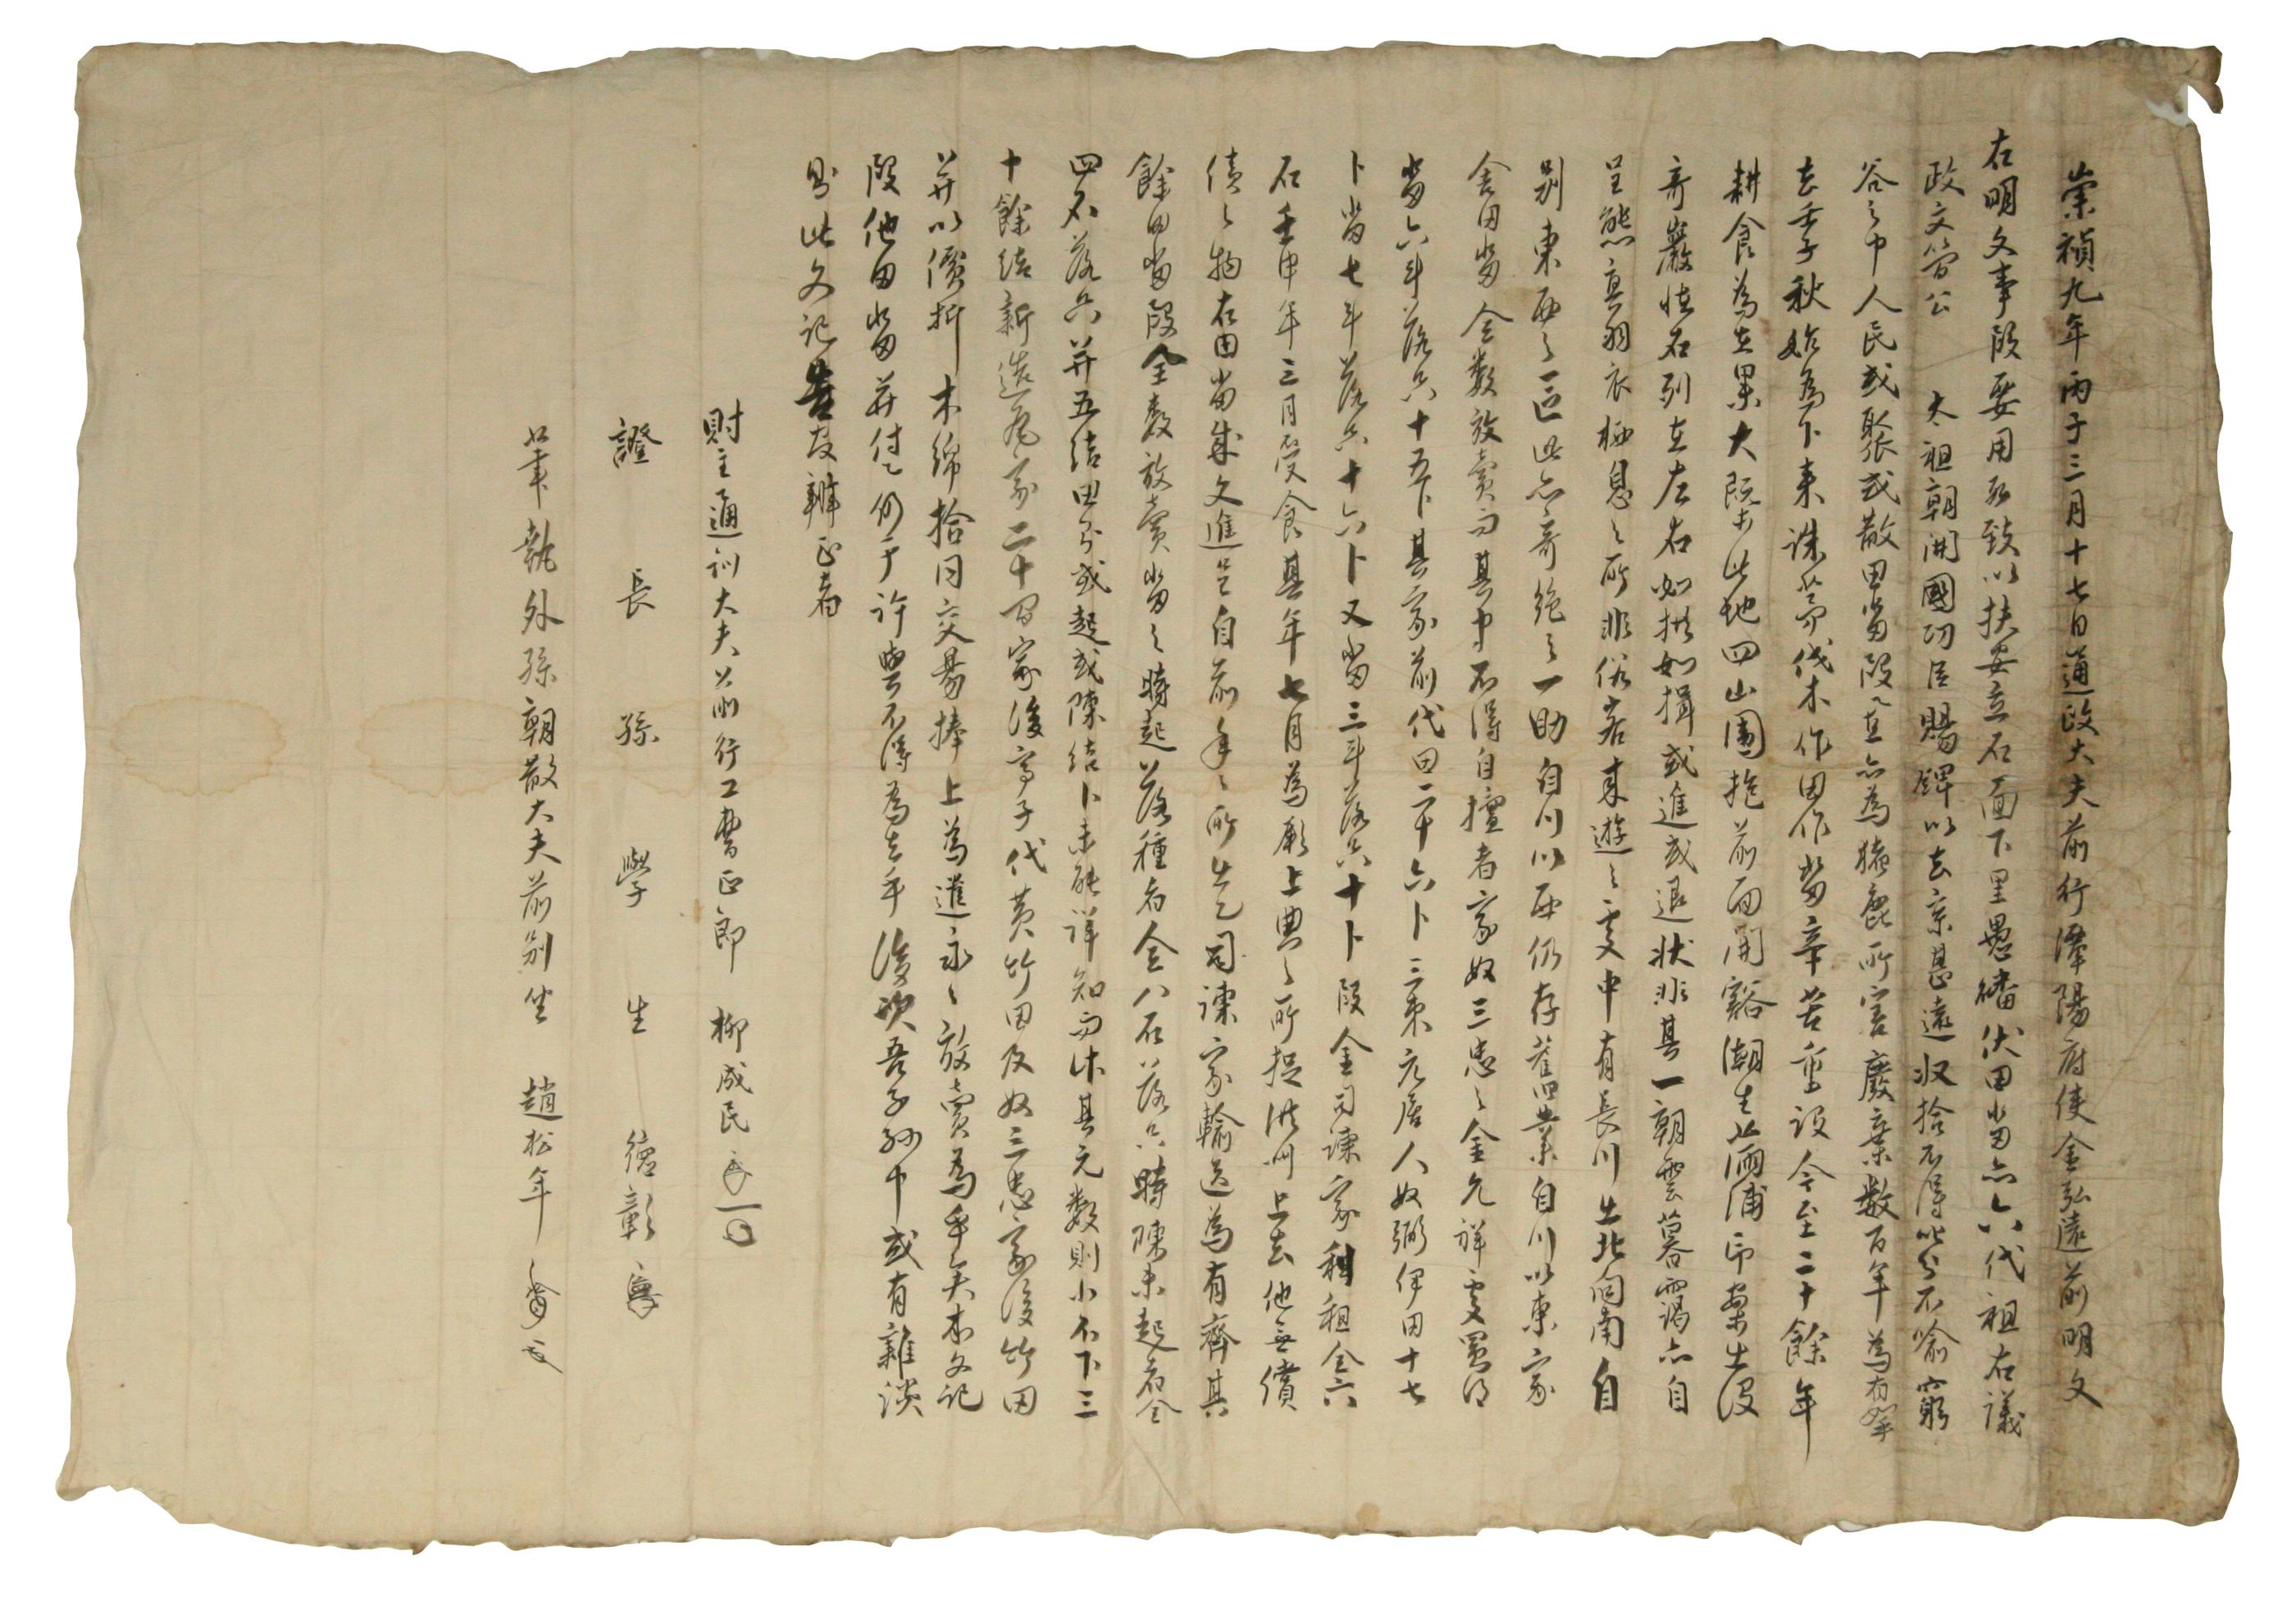 1636년에 유성민이 김홍원에게 토지를 방매하면서 작성한 토지매매문기